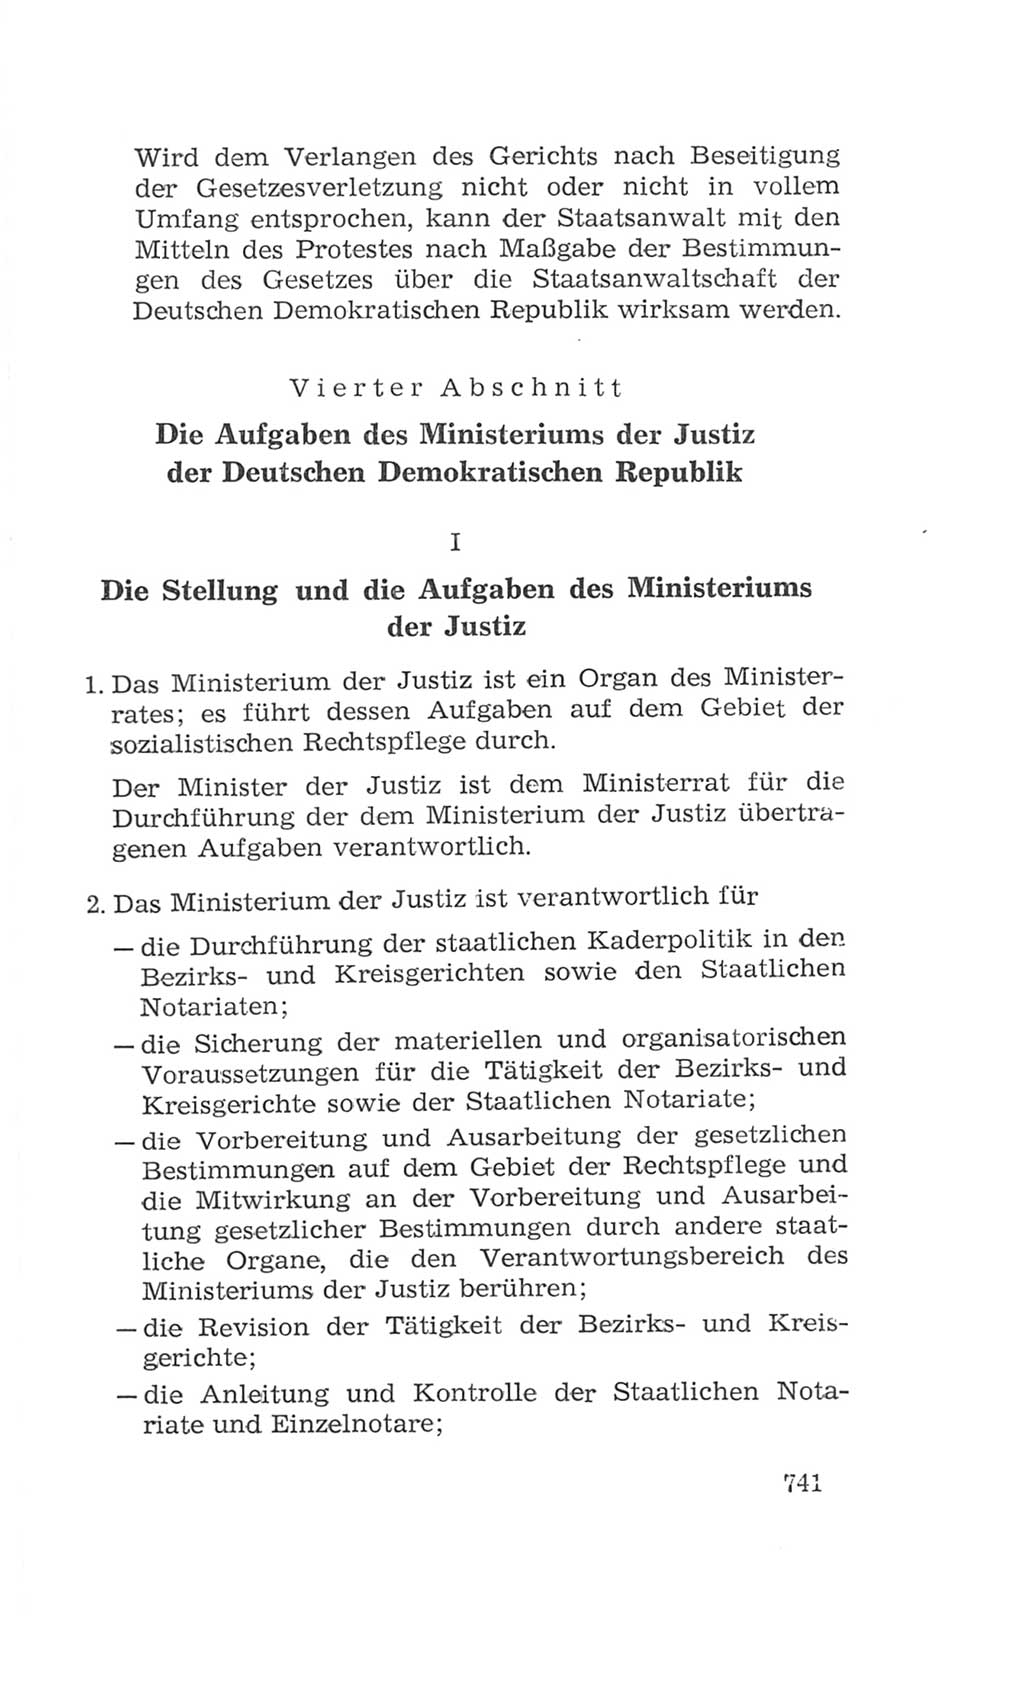 Volkskammer (VK) der Deutschen Demokratischen Republik (DDR), 4. Wahlperiode 1963-1967, Seite 741 (VK. DDR 4. WP. 1963-1967, S. 741)